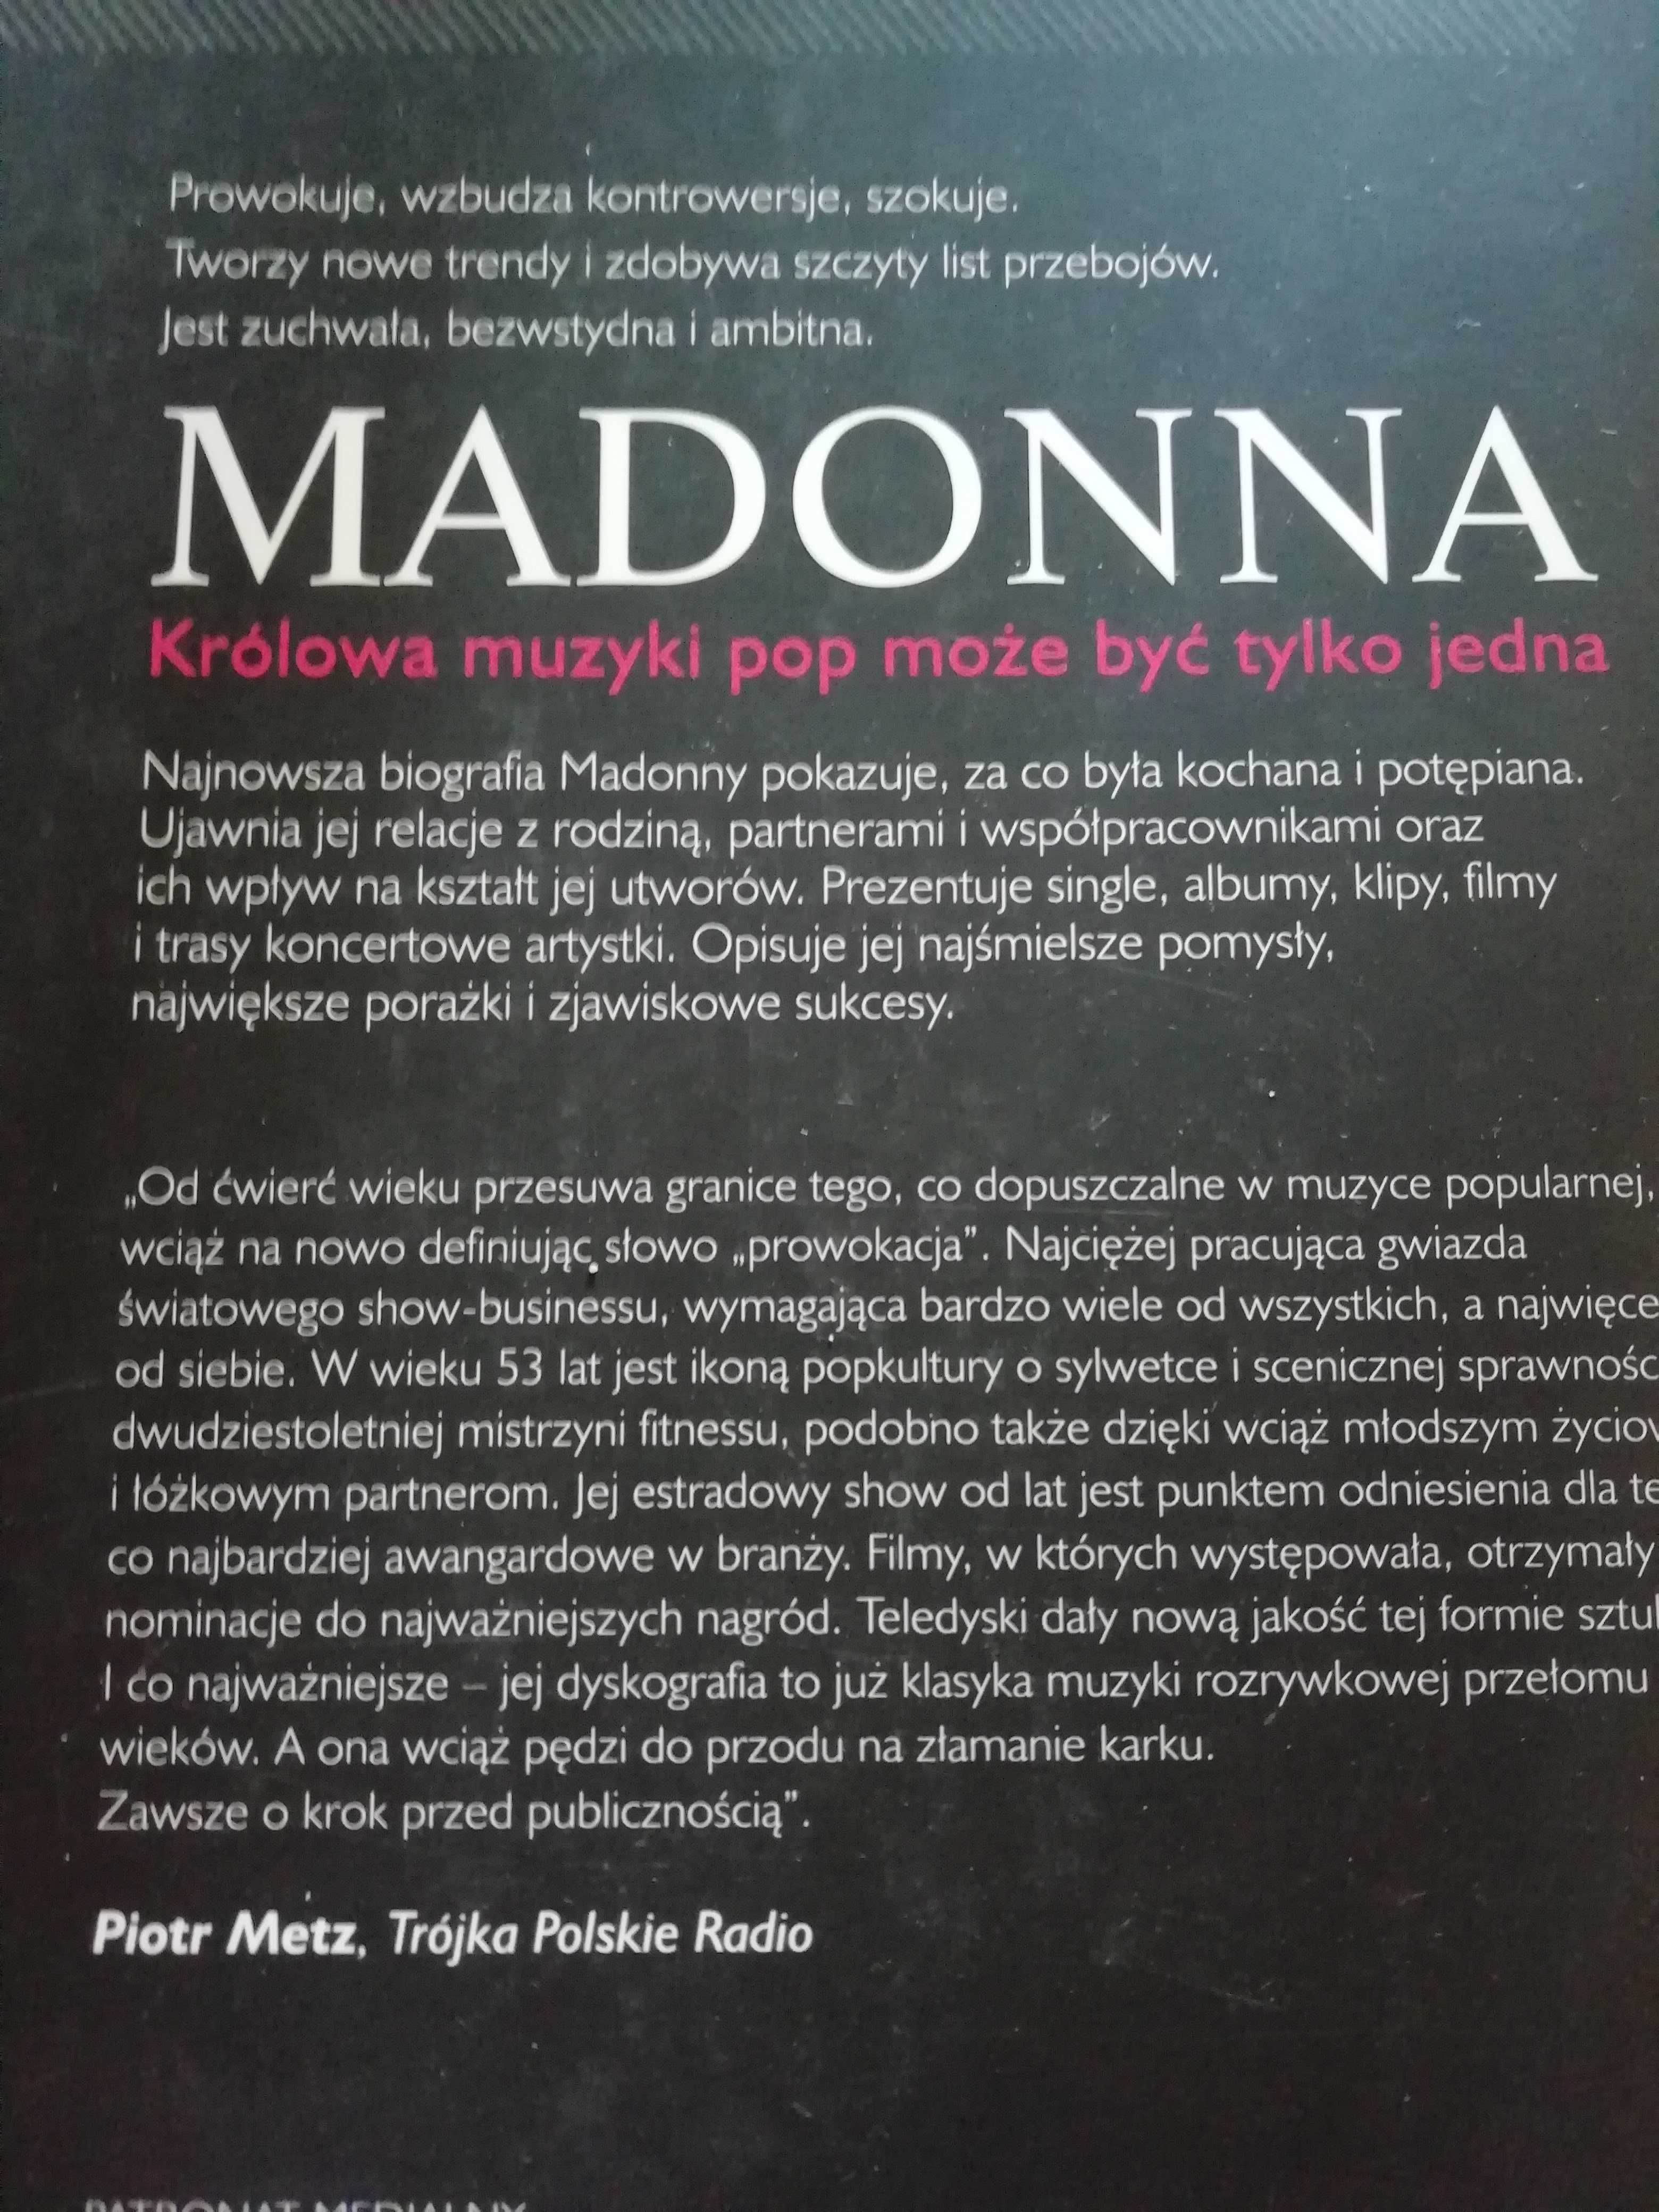 Madonna Królowa Muzyki Pop Daryl Easlea Eddi Fiegel NOWA
15 zł